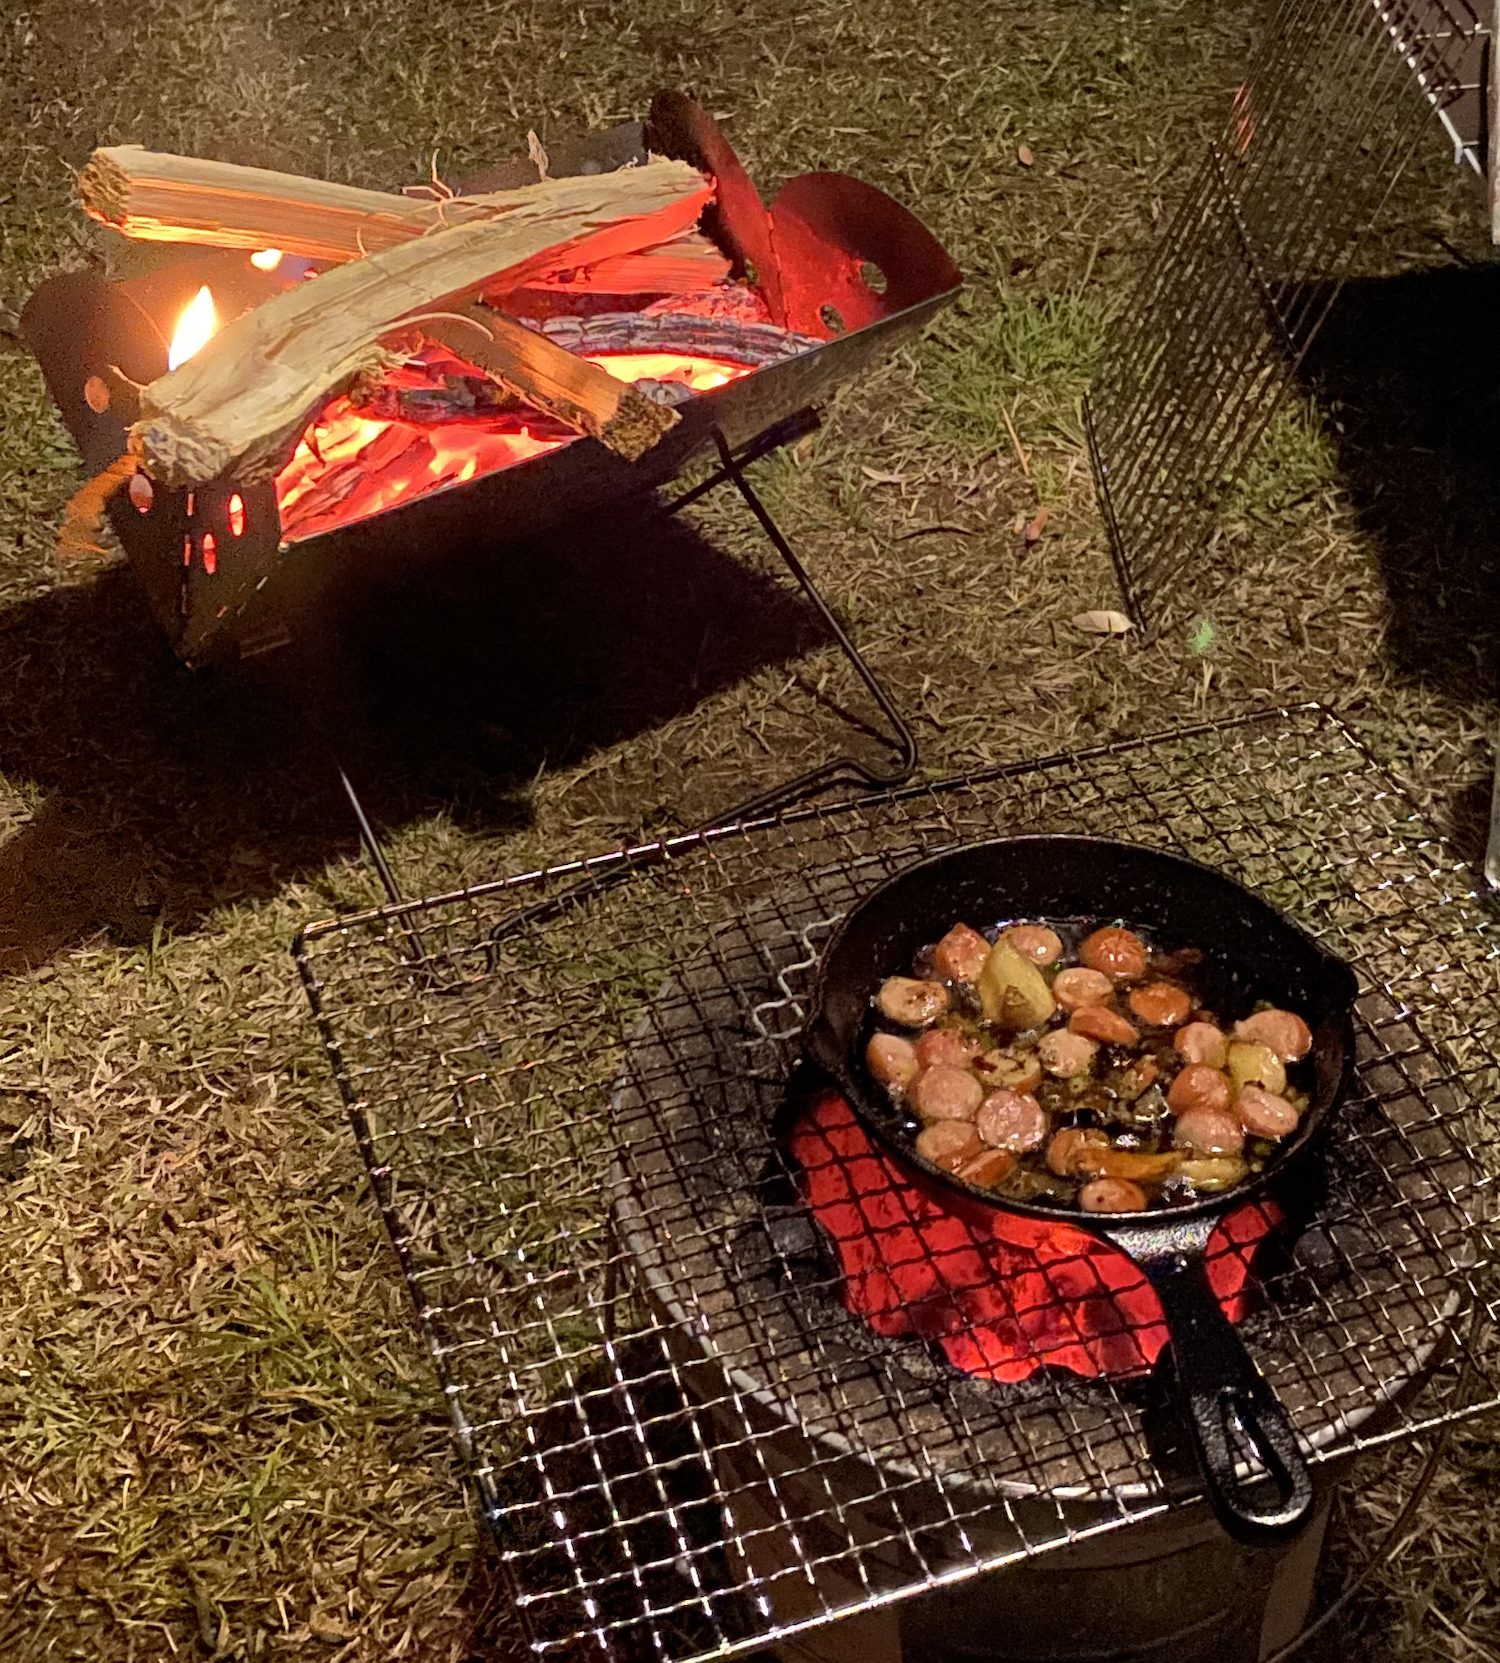 ソロキャンプに「七輪」がおすすめな理由 | 炭火コンロ・BBQグリル 【BE-PAL】キャンプ、アウトドア、自然派生活の情報源ビーパル